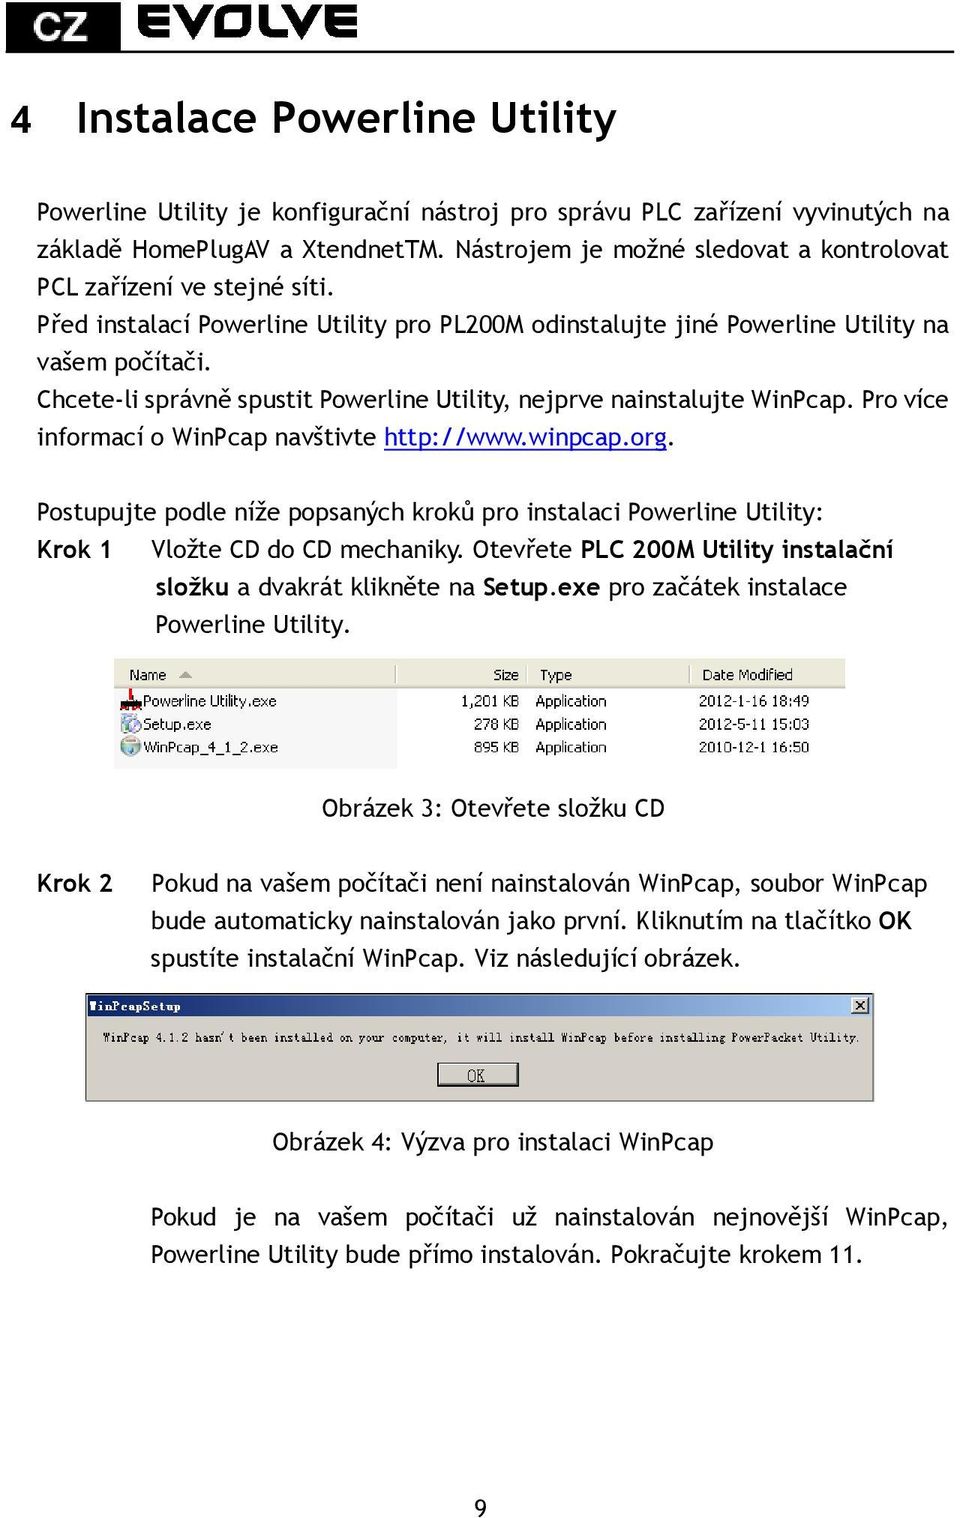 Chcete-li správně spustit Powerline Utility, nejprve nainstalujte WinPcap. Pro více informací o WinPcap navštivte http://www.winpcap.org.